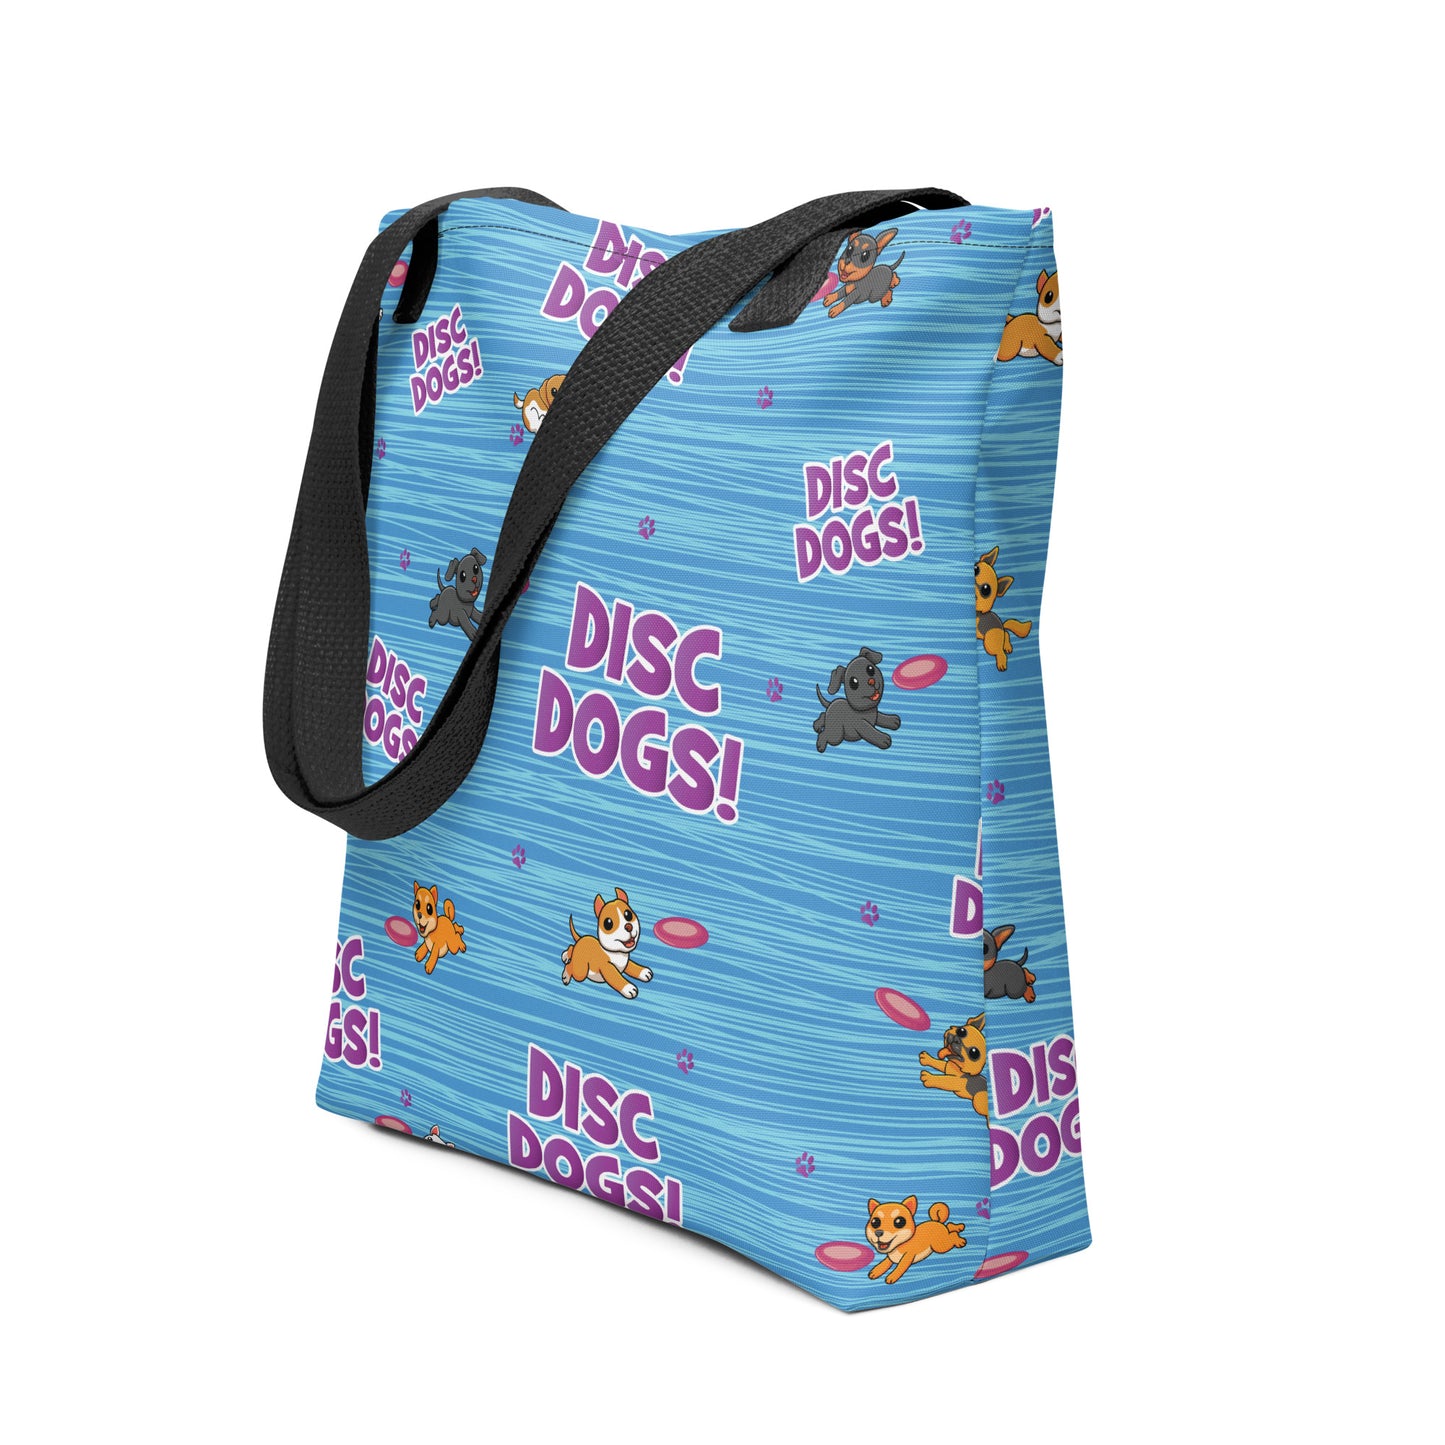 DISC DOG Tote bag